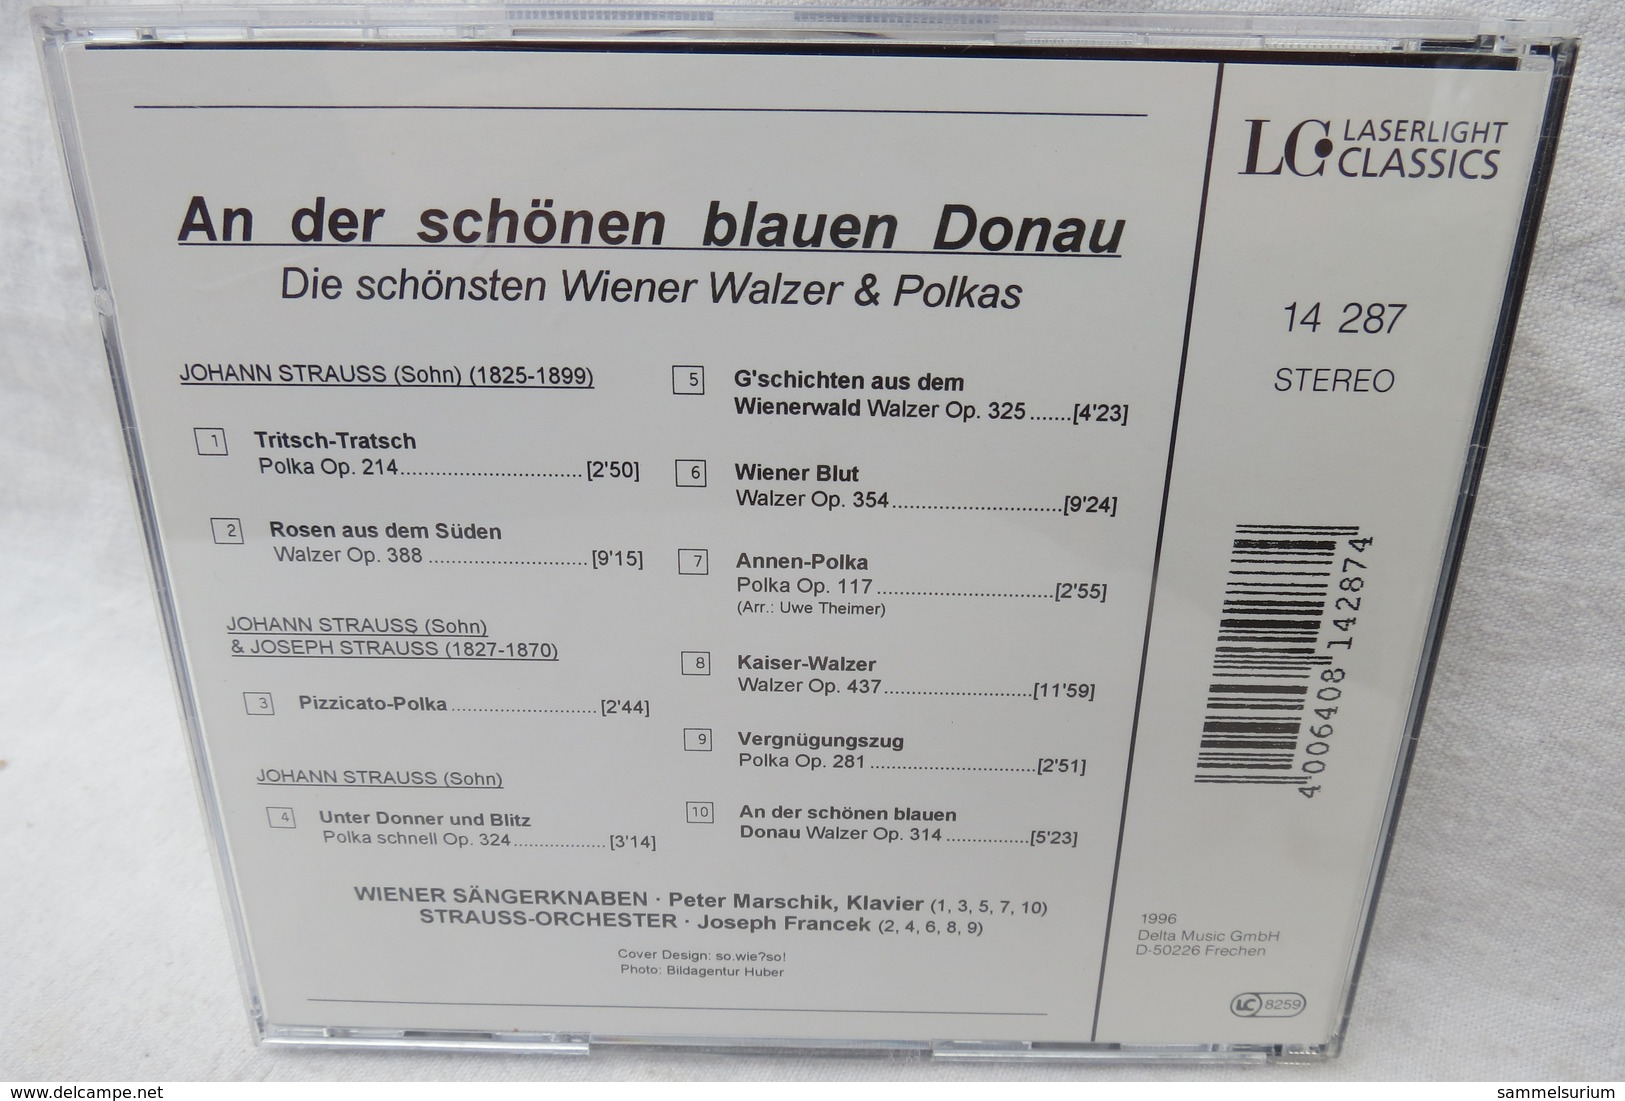 CD "Wiener Sängerknaben / Strauss-Orchester" An Der Schönen Blauen Donau, Die Schönsten Wiener Walzer & Polkas - Sonstige - Deutsche Musik